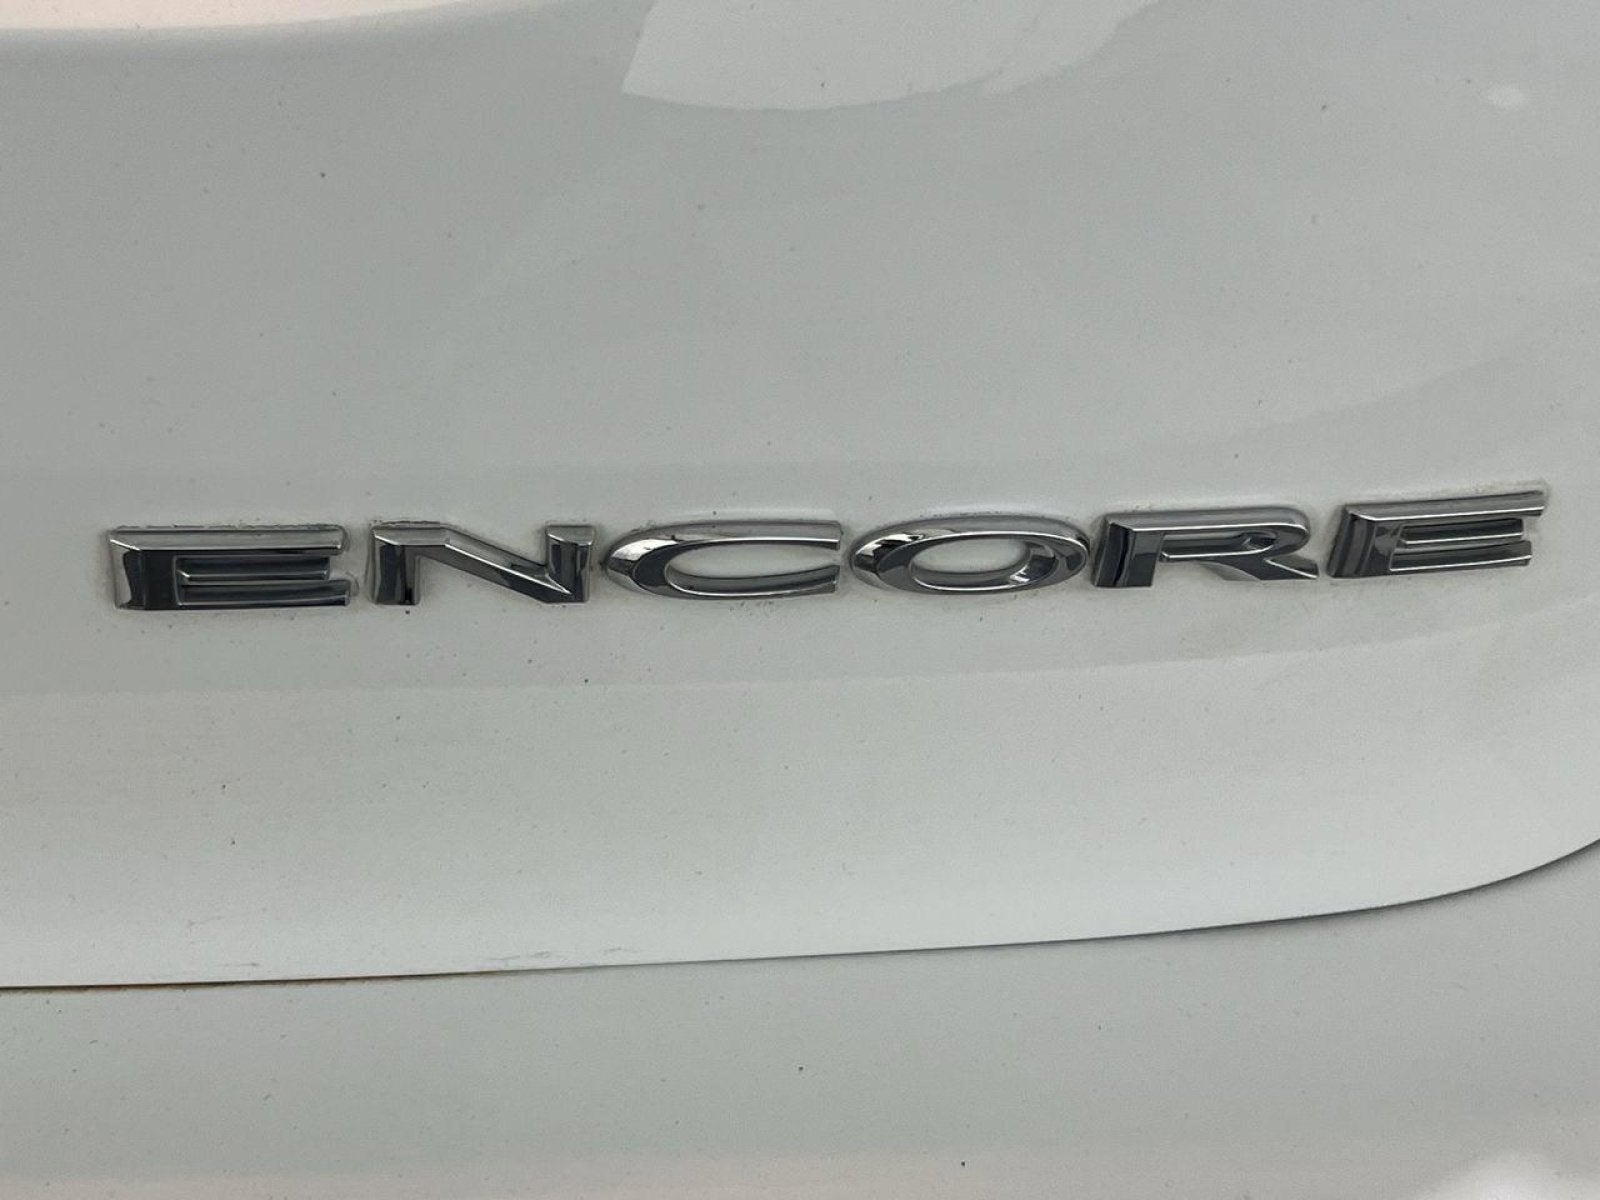 2018 Buick Encore Preferred